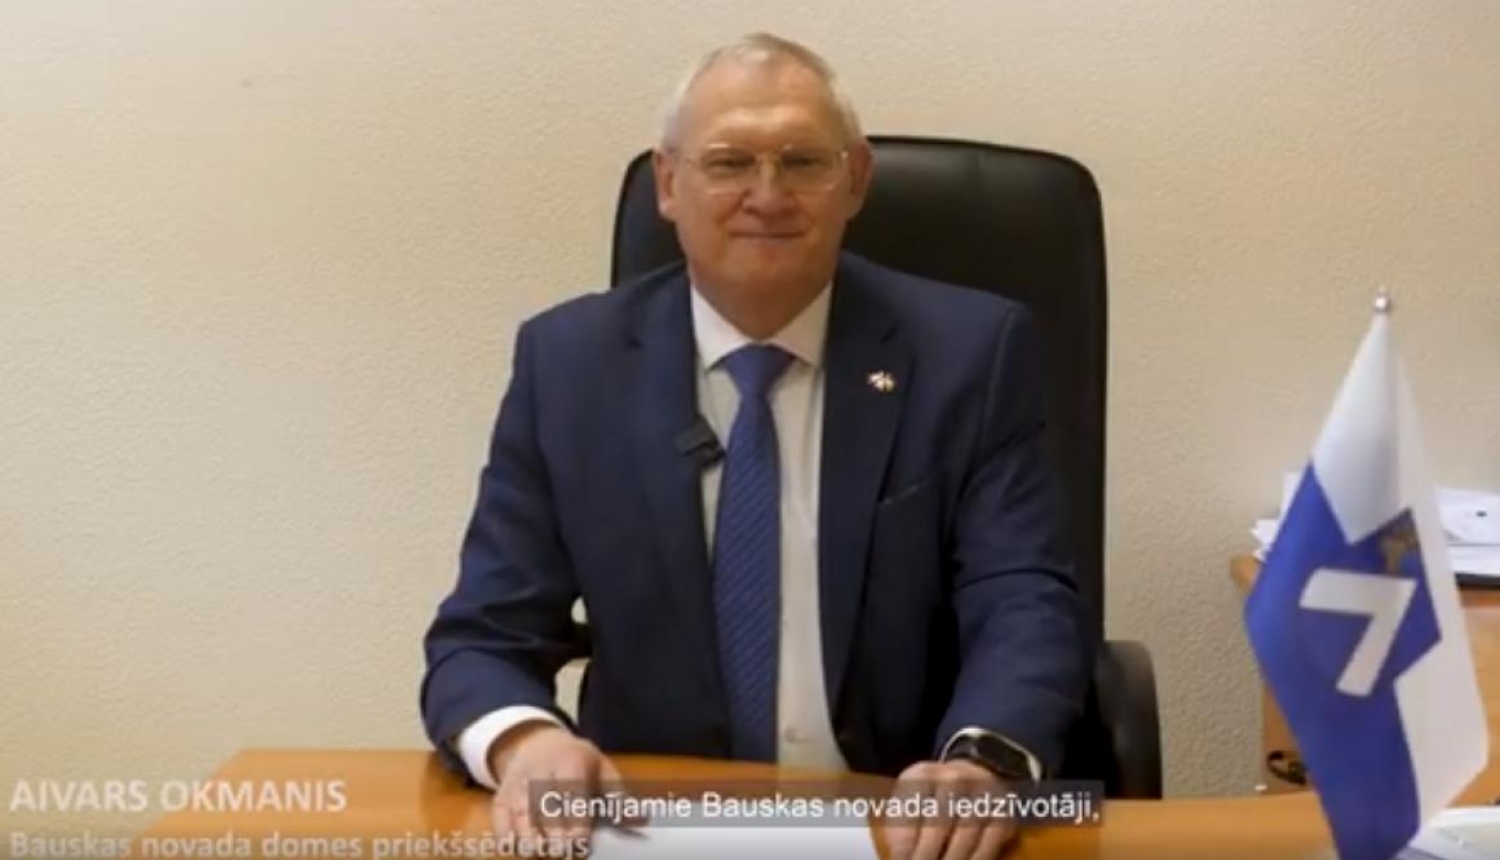 Bauskas novada domes priekšsēdētāja Aivara Okmaņa uzruna gadumijā